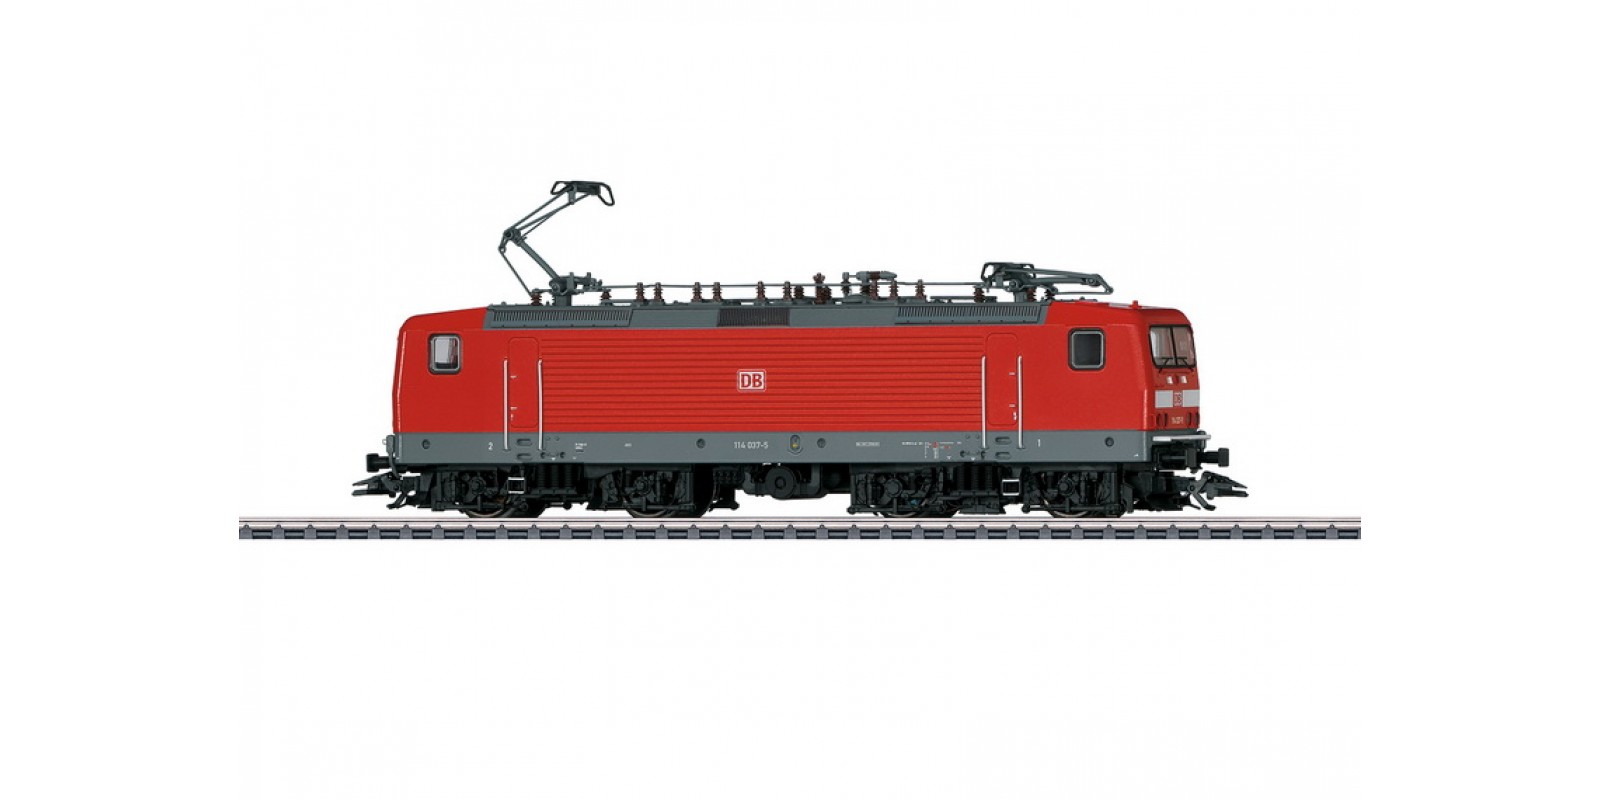 37426 Class 114 Electric Locomotive